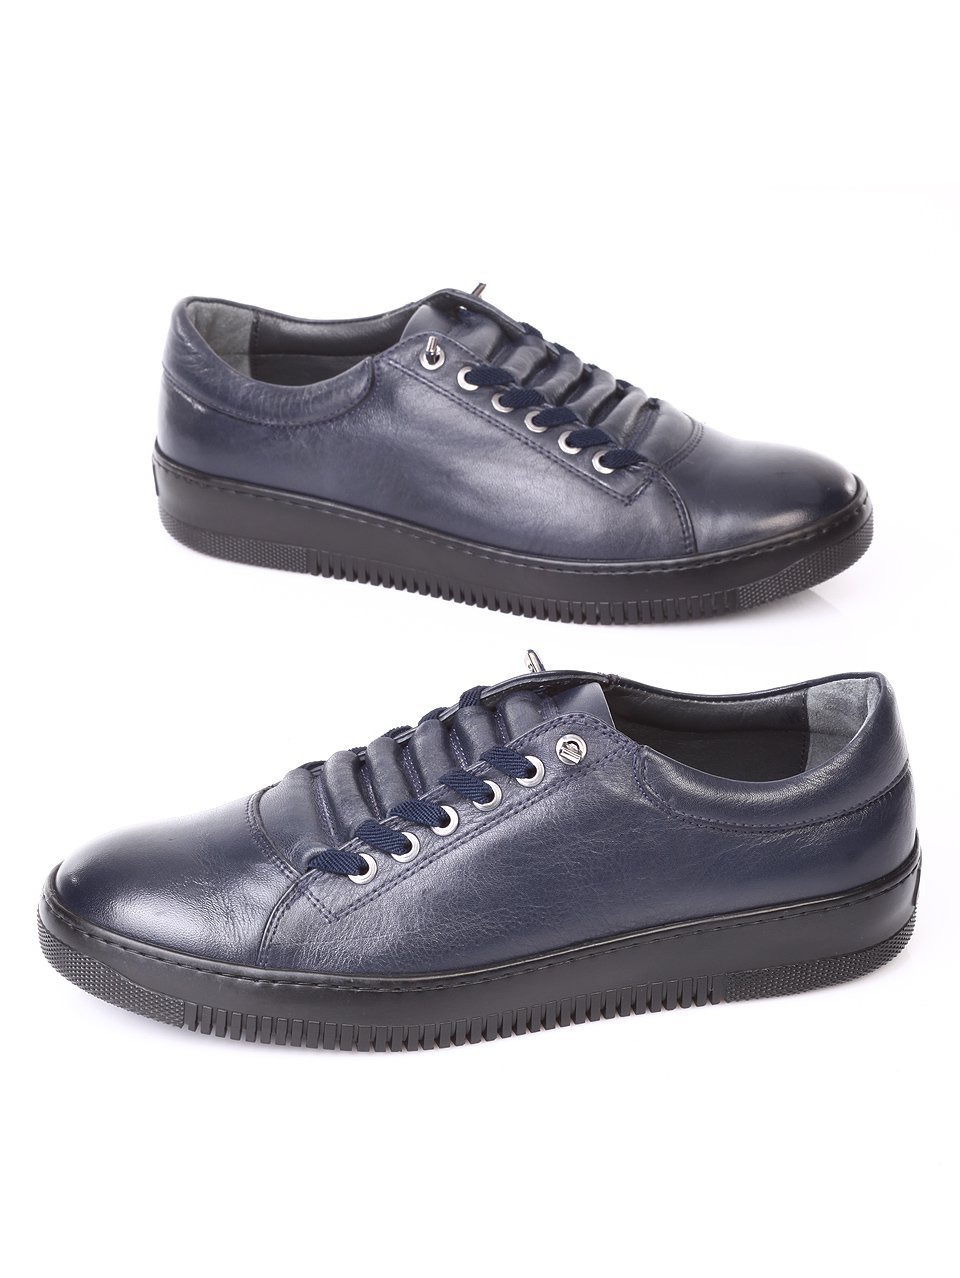 Ежедневни мъжки обувки от естествена кожа в синьо 7AT-171127 blue leather